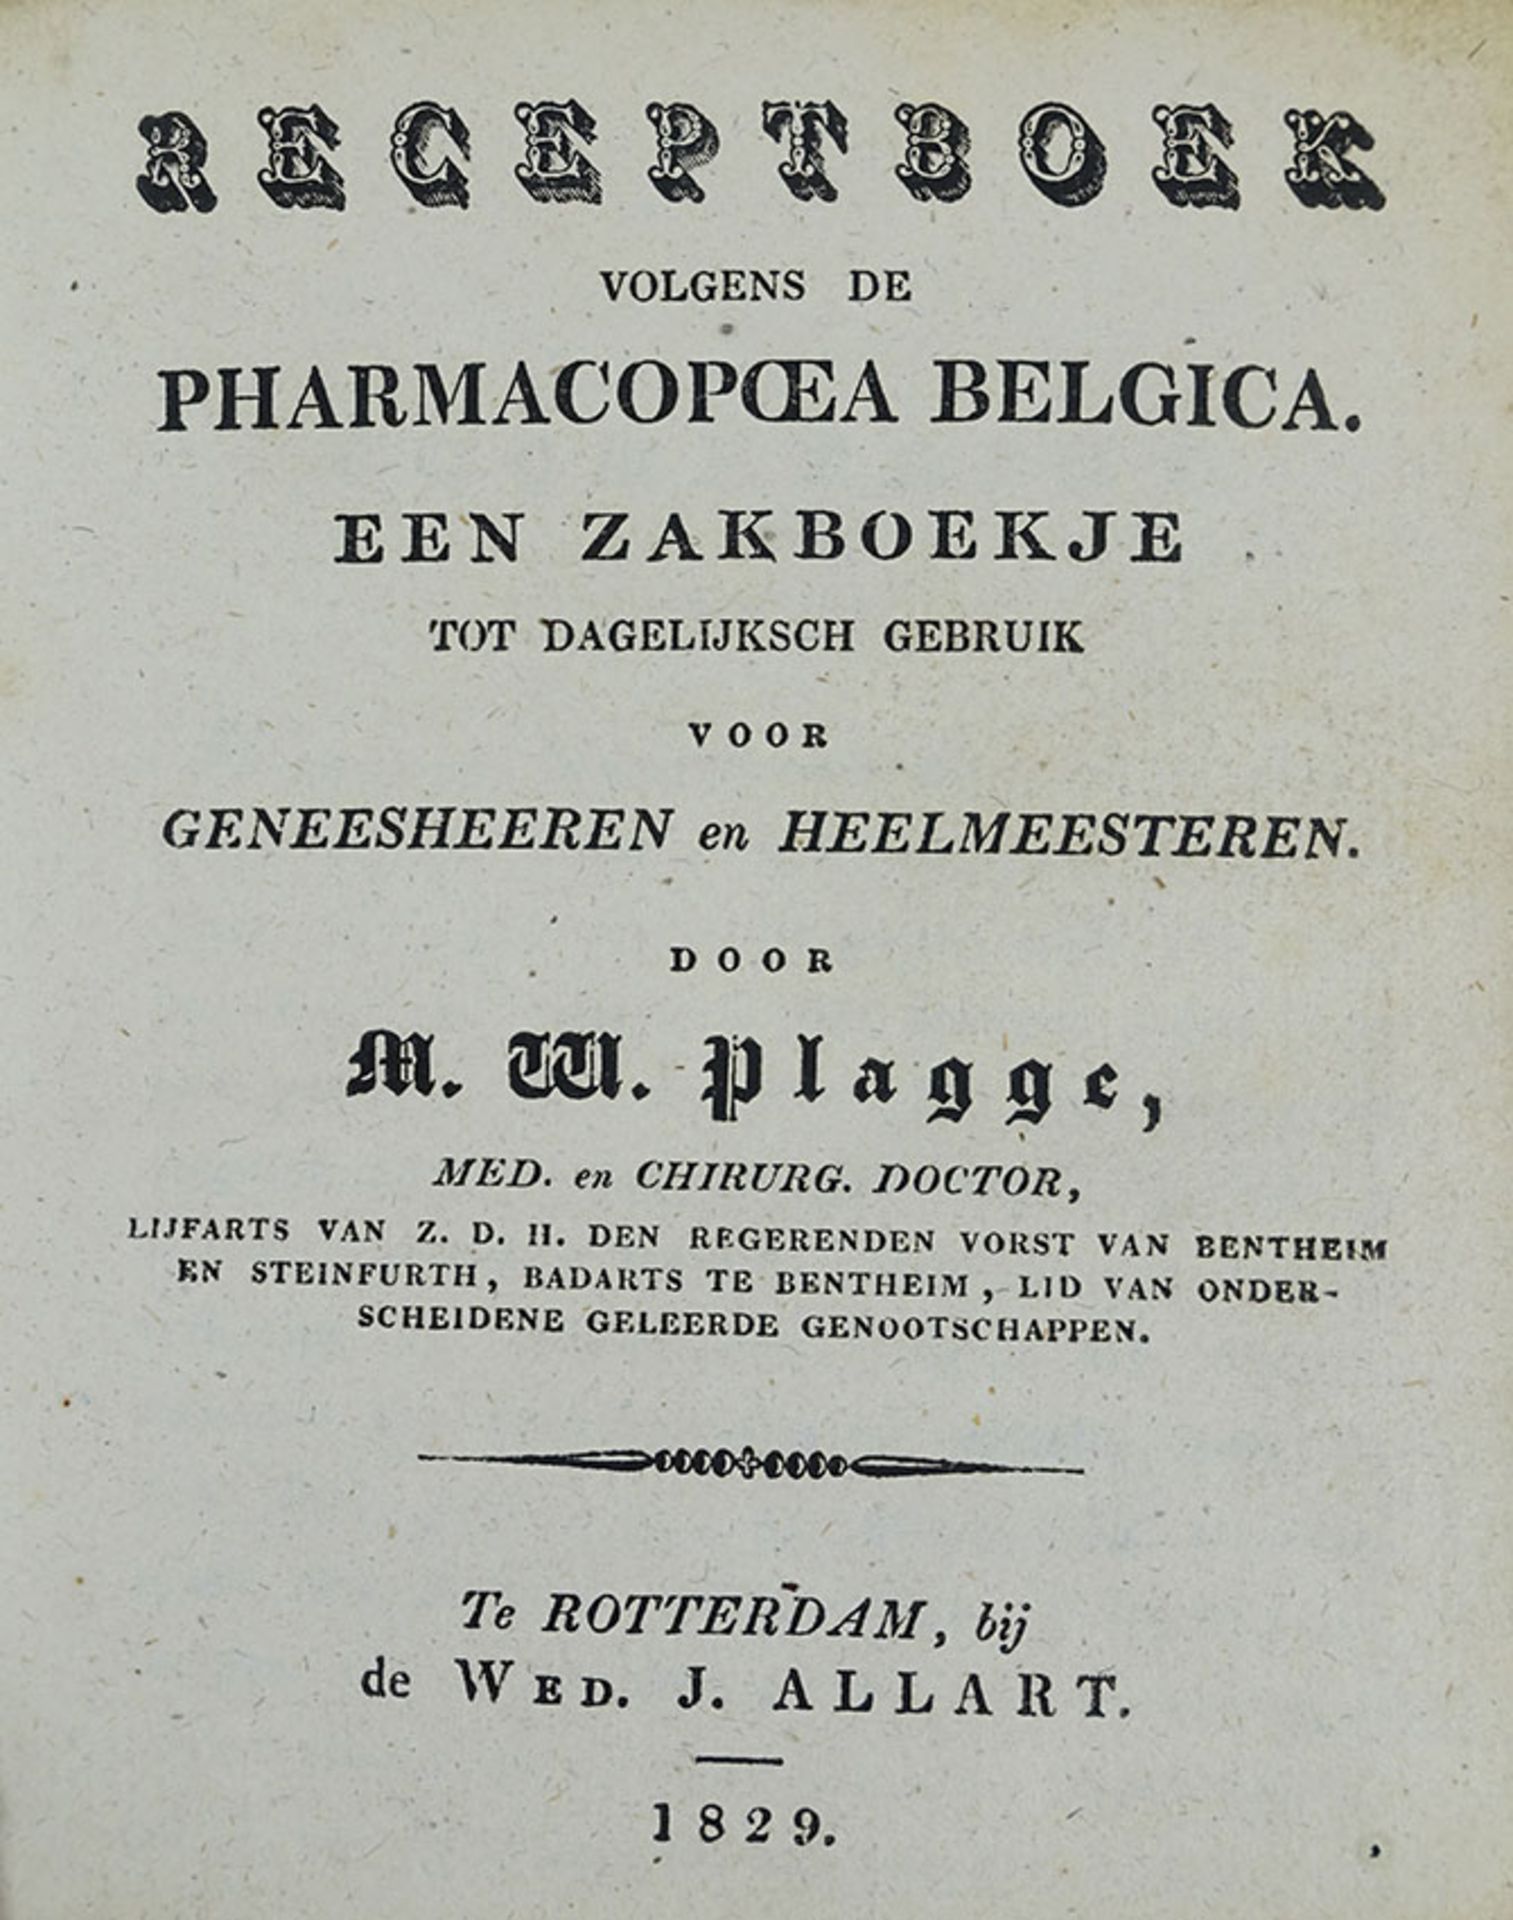 PLAGGE, M.W. Receptboek volgens de Pharmacopa Belgica. Een zakboekje tot dagelijksch gebruik voor